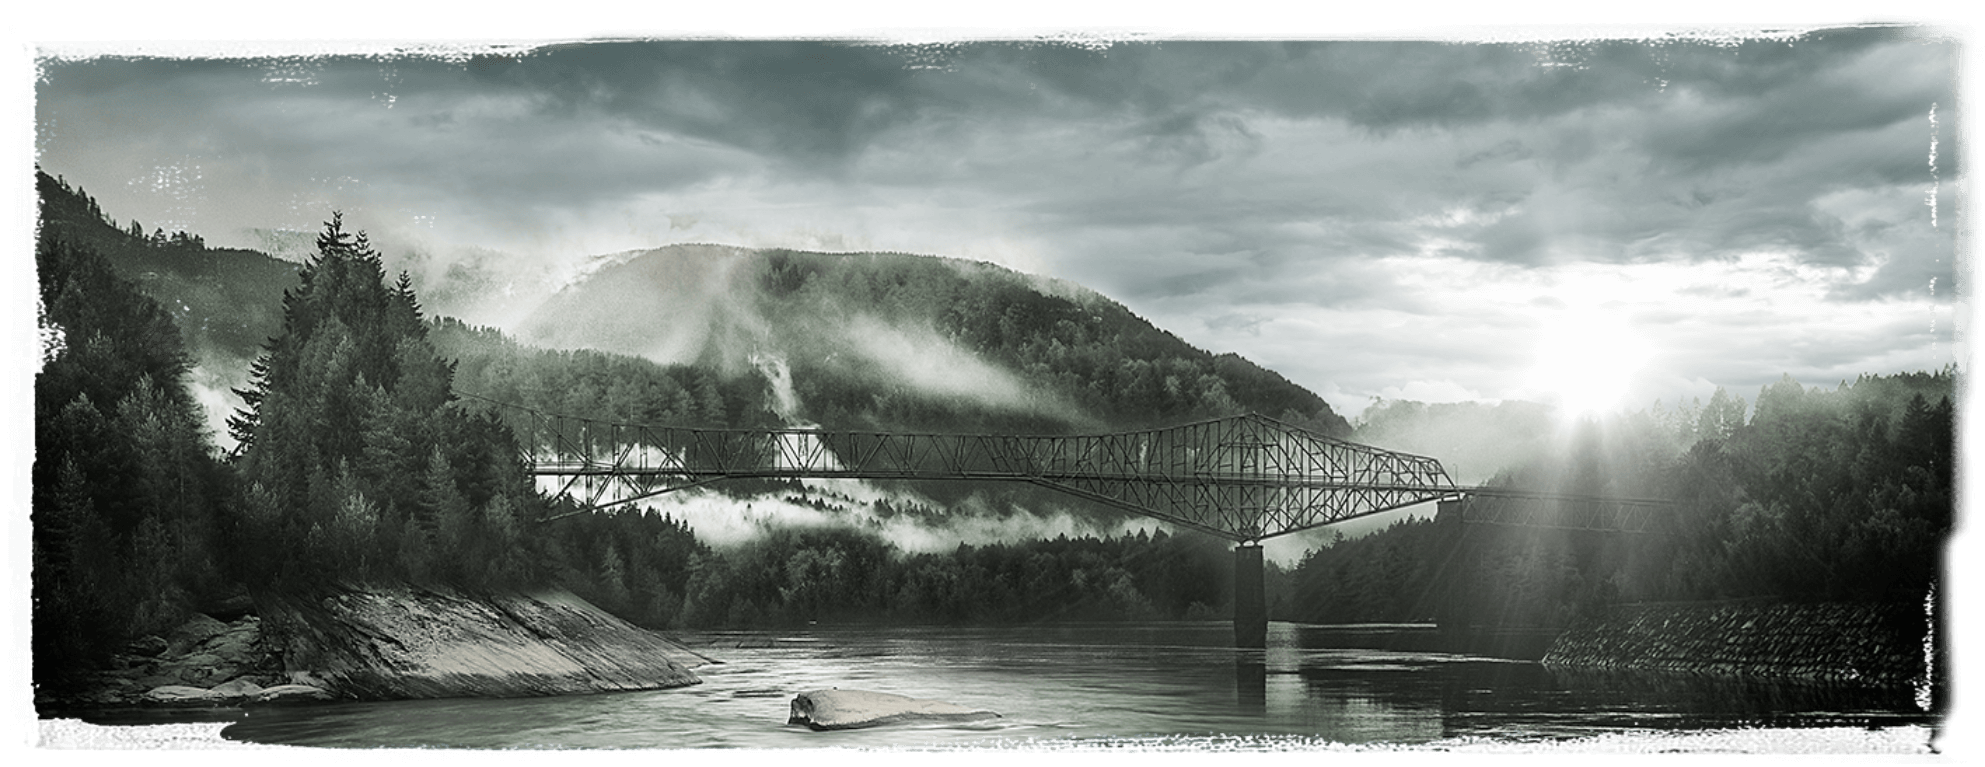 Krajobraz rzeki pośród wzgórz i mostu kolejowego w Kentucky